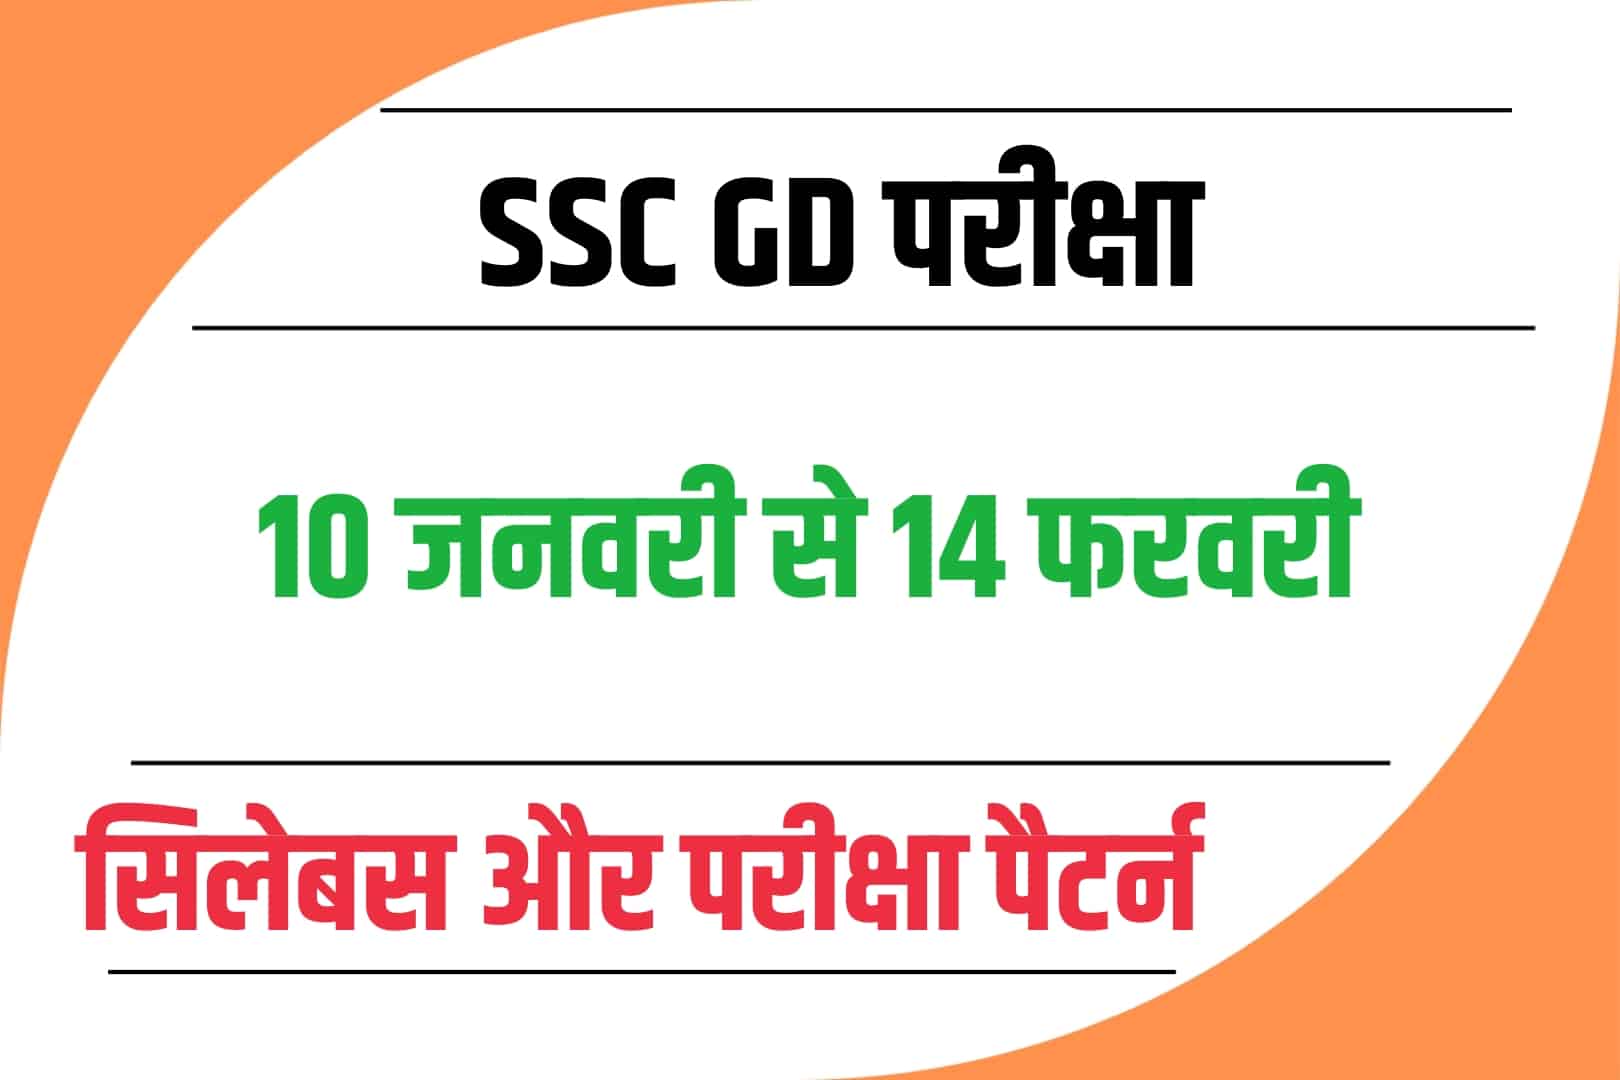 SSC GD Syllabus In Hindi 2023 : परीक्षा से पहले जानें SSC GD परीक्षा का सिलेबस और पैटर्न